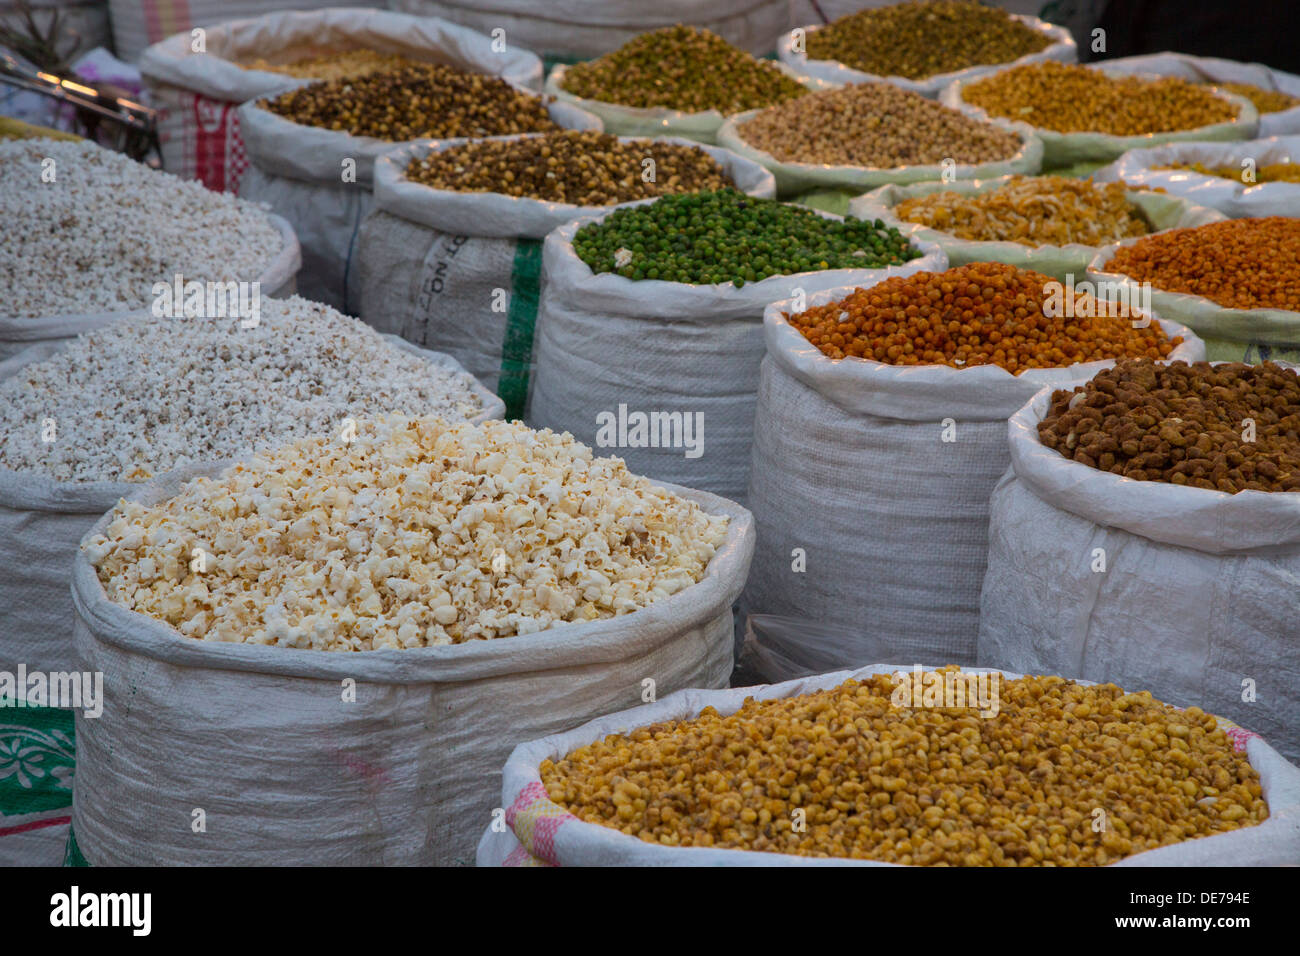 L'Inde, Rajasthan, Jaipur, les légumineuses et le maïs soufflé Banque D'Images